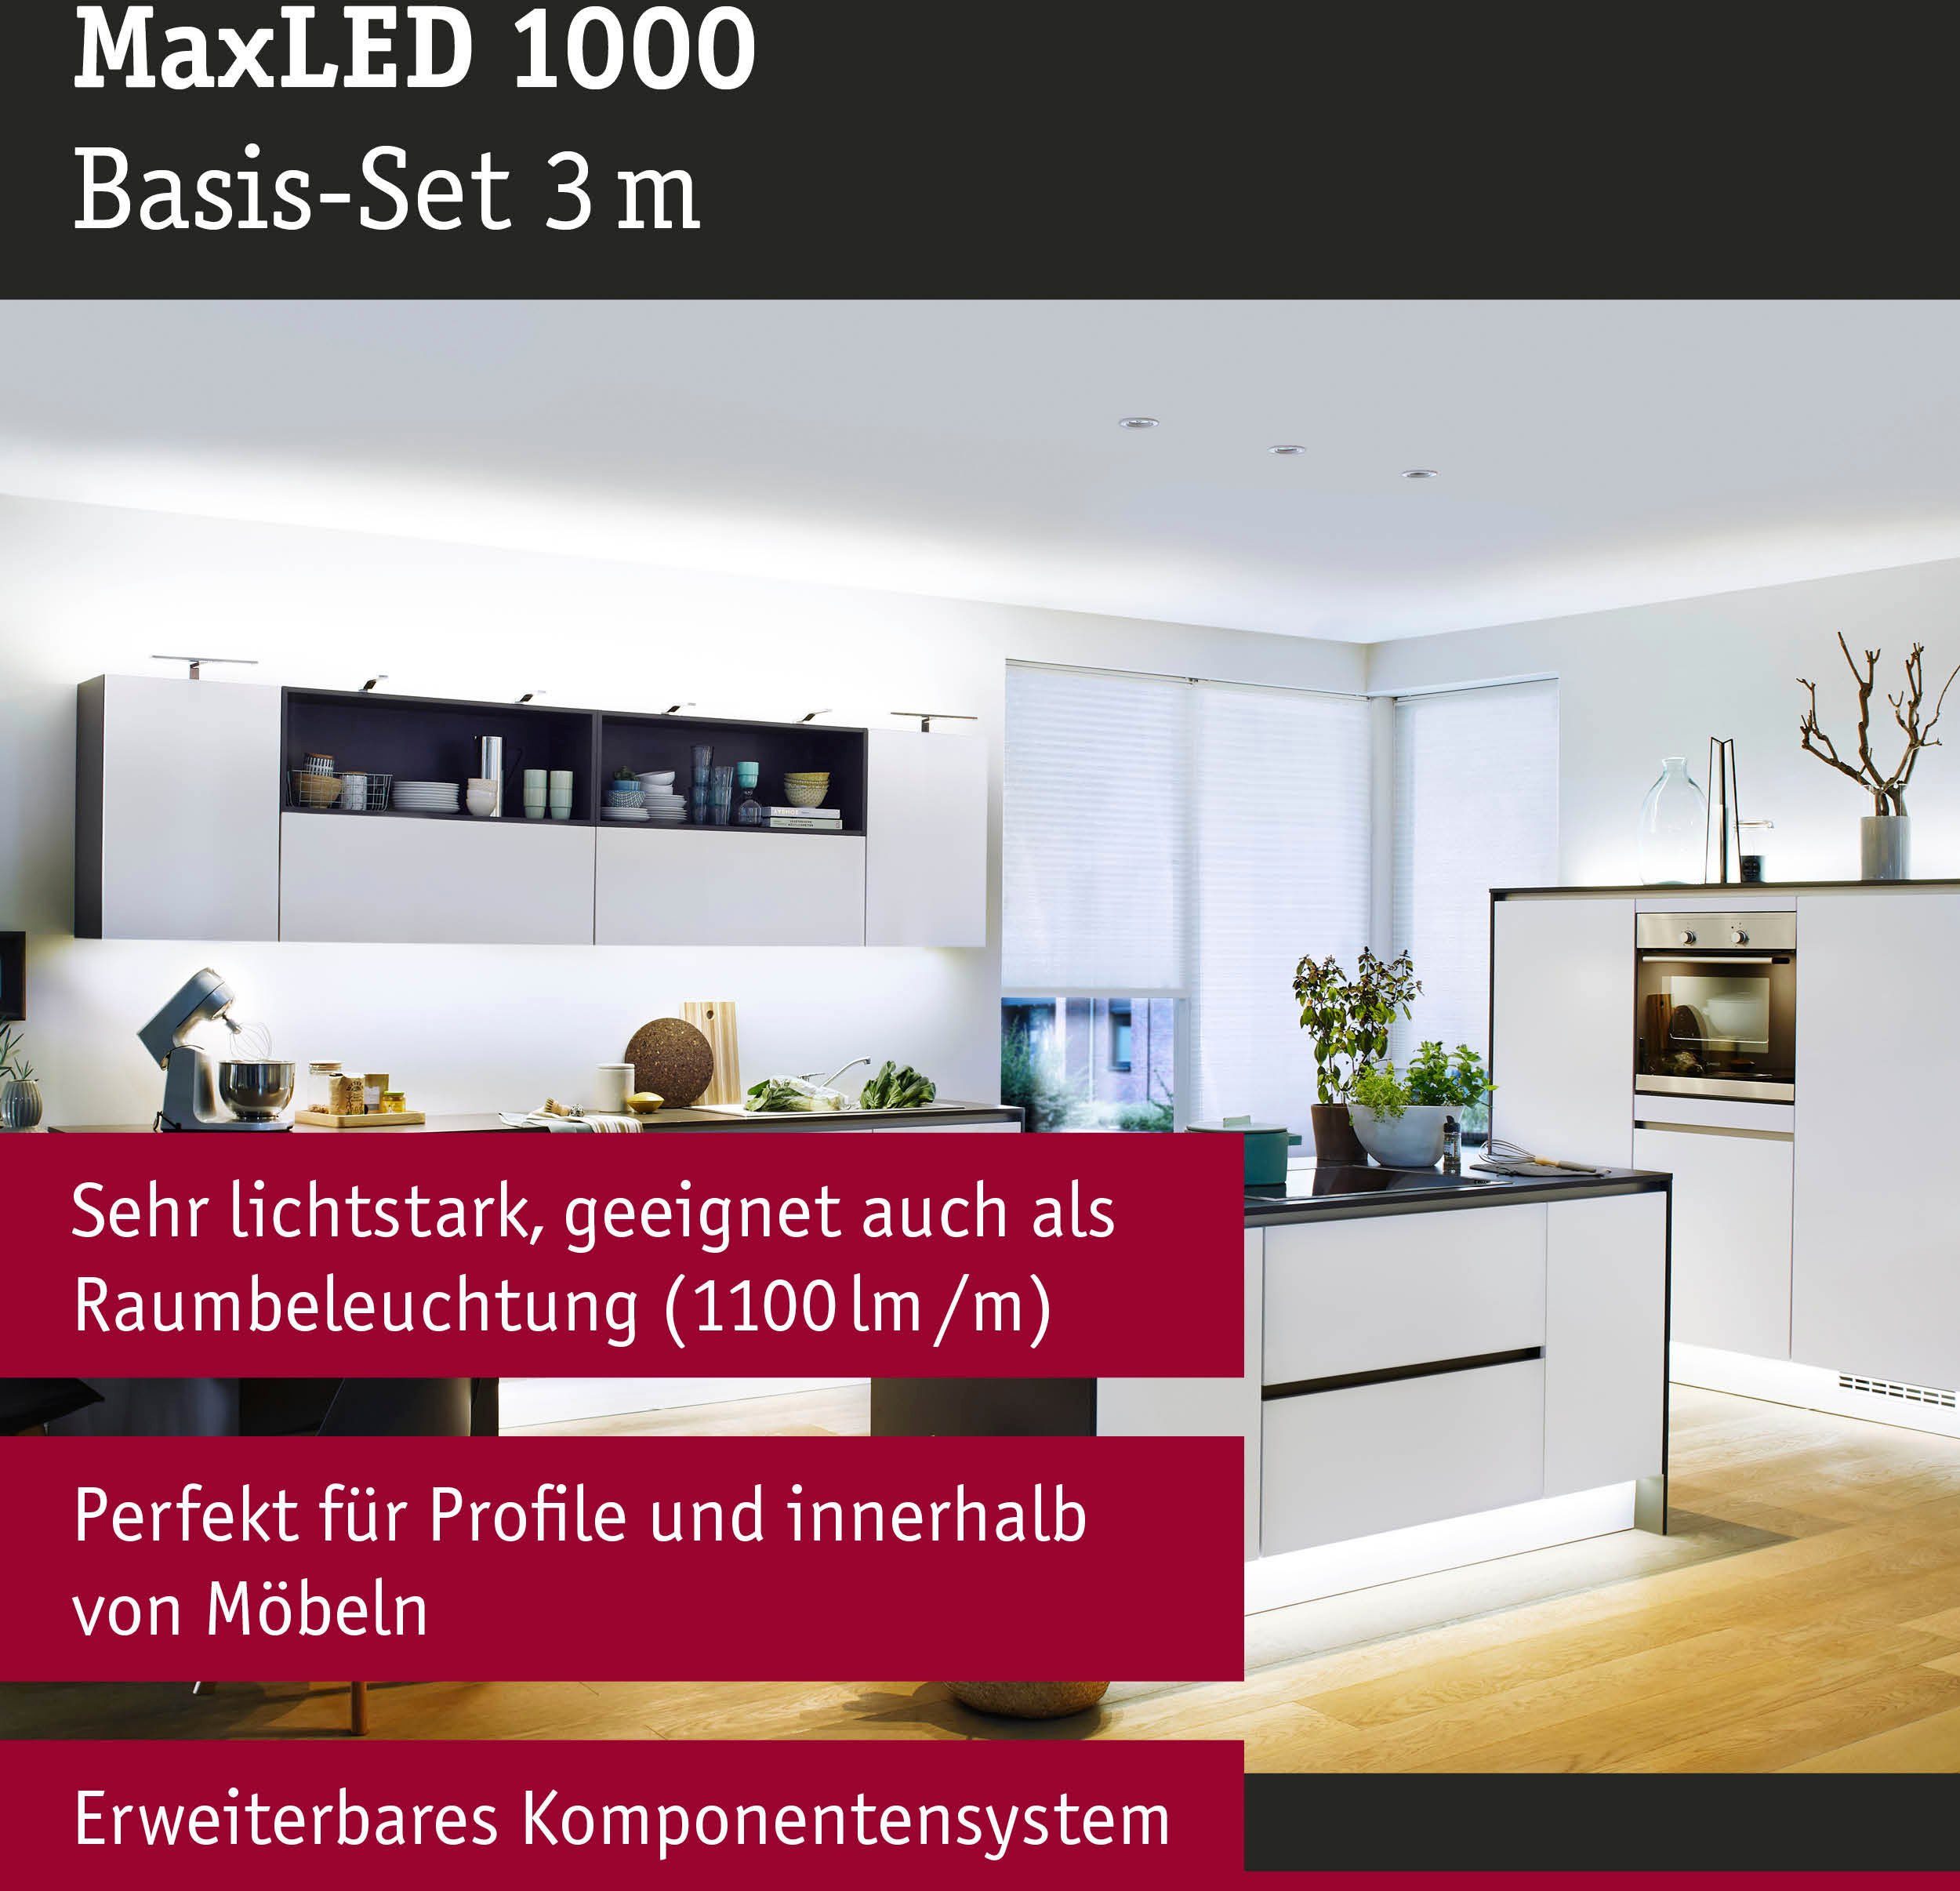 Paulmann LED-Streifen MaxLED 1000 Basisset 3m 1-flammig, 35W 1100lm/m unbeschichtet 6500K, Tageslichtweiß Basisset